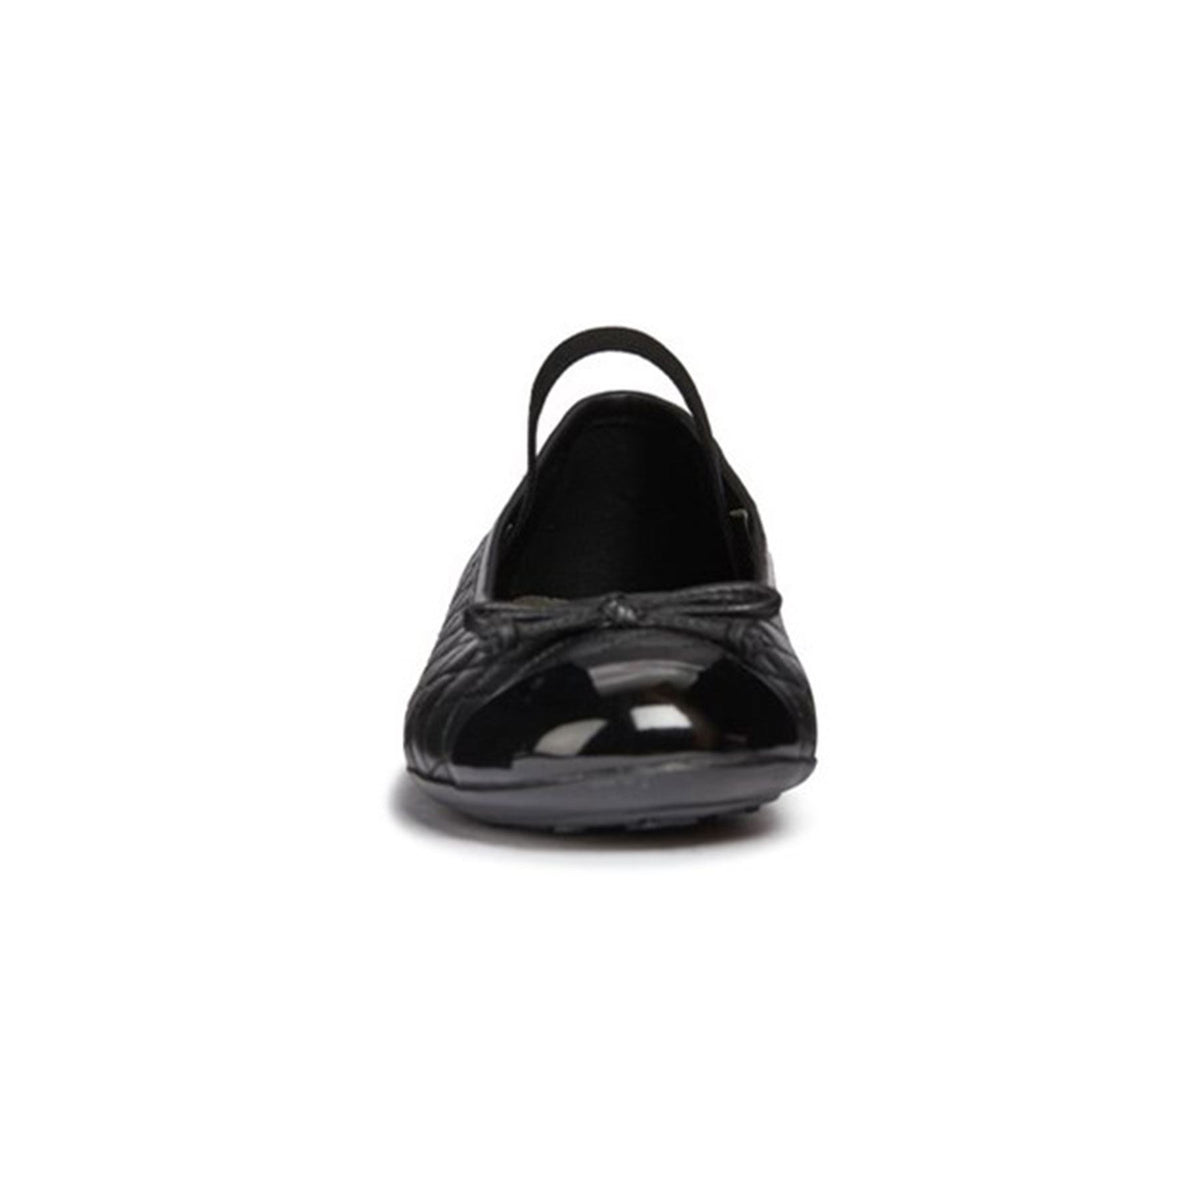 Geox Girls Black Elasticated Plie' Junior School Shoes